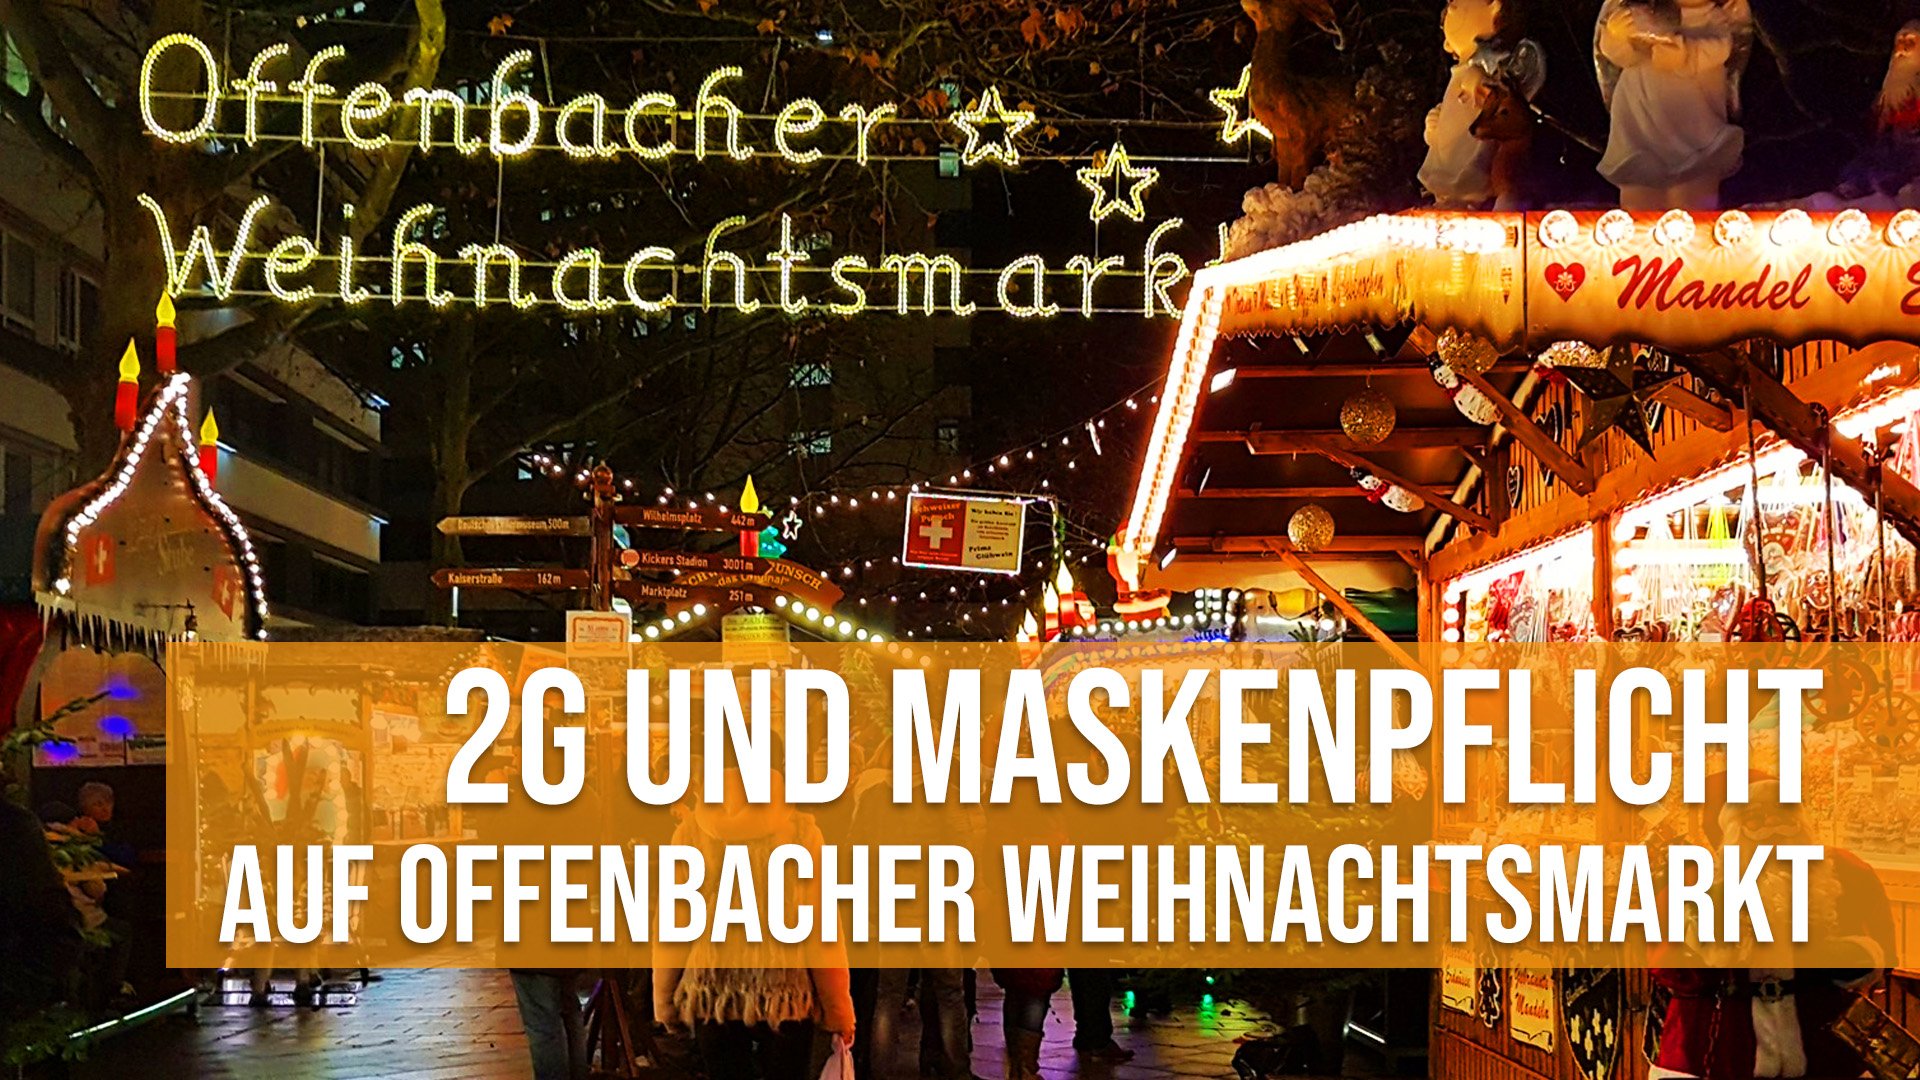 2G und Maskenpflicht auf Offenbacher Weihnachtsmarkt - Corona Hygirneregeln Maßnahmen